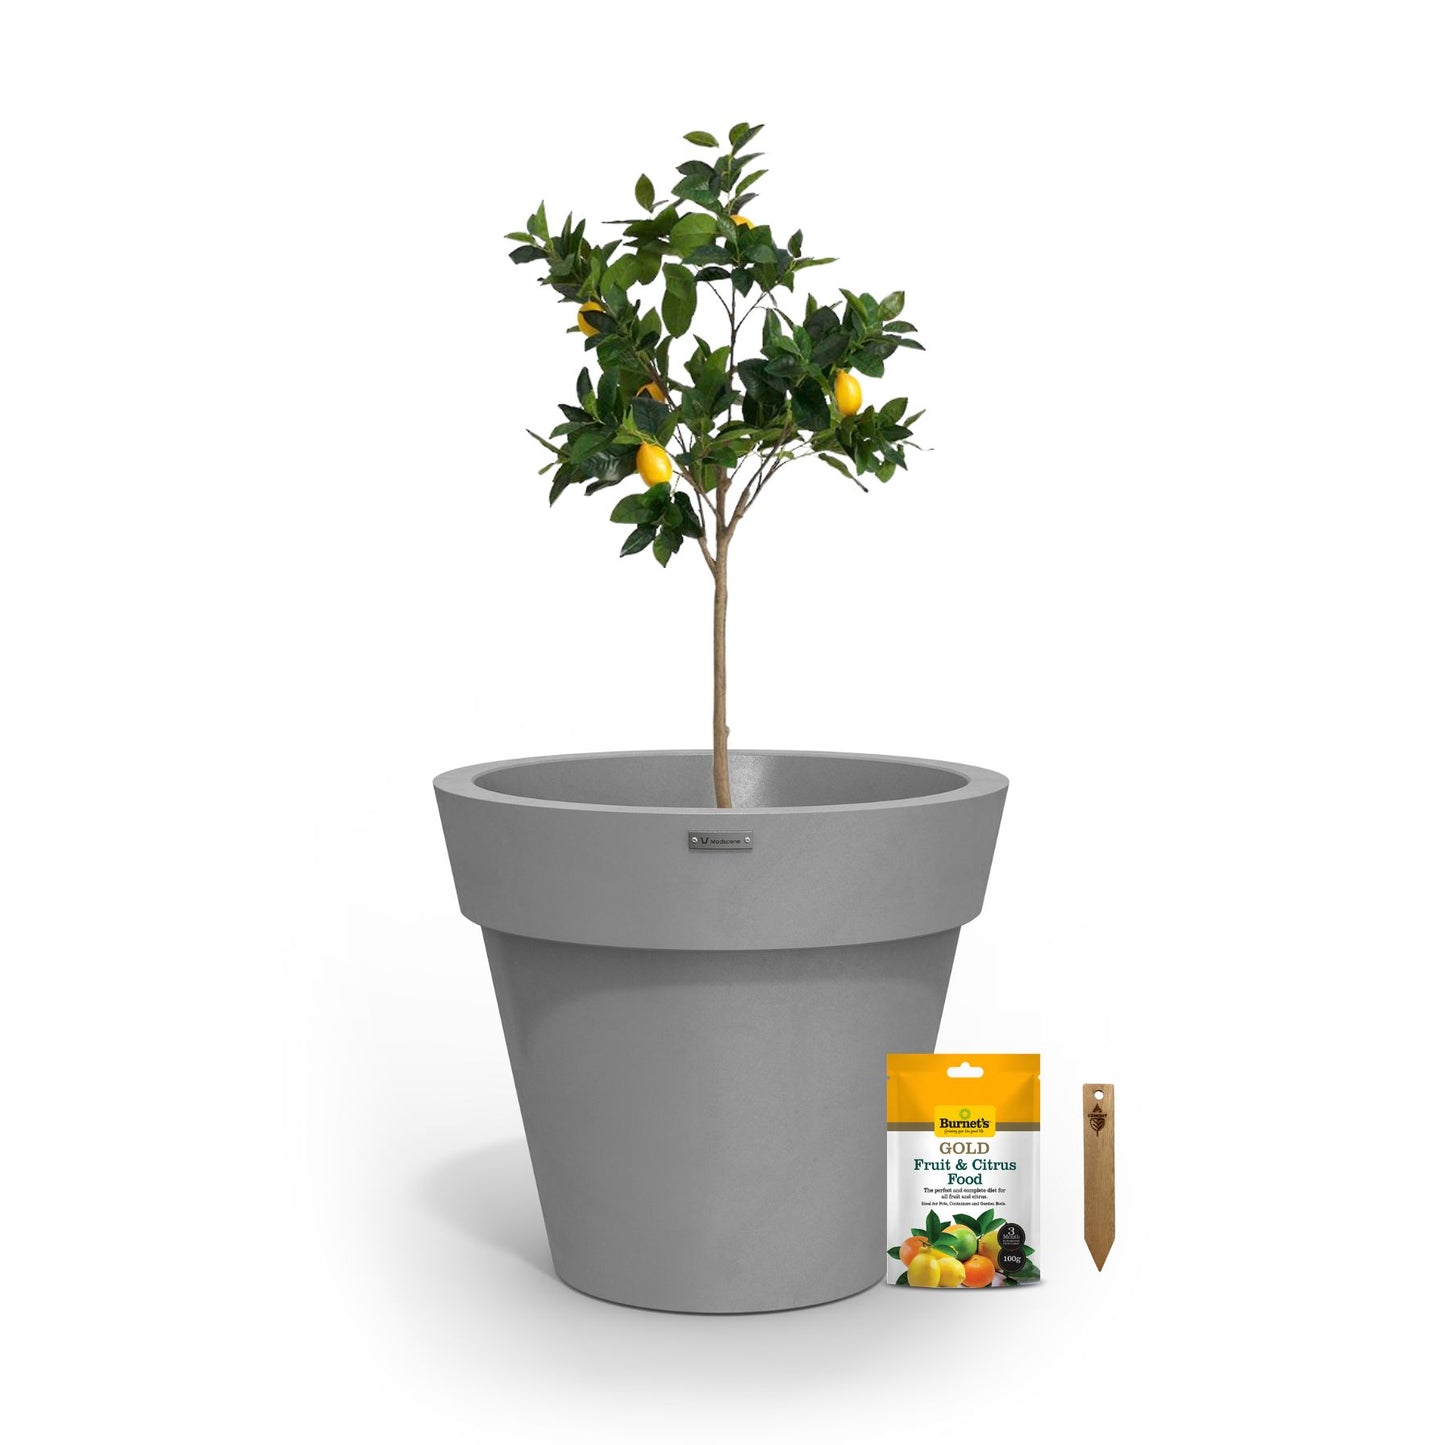 A lemon tree in a grey planter pot.